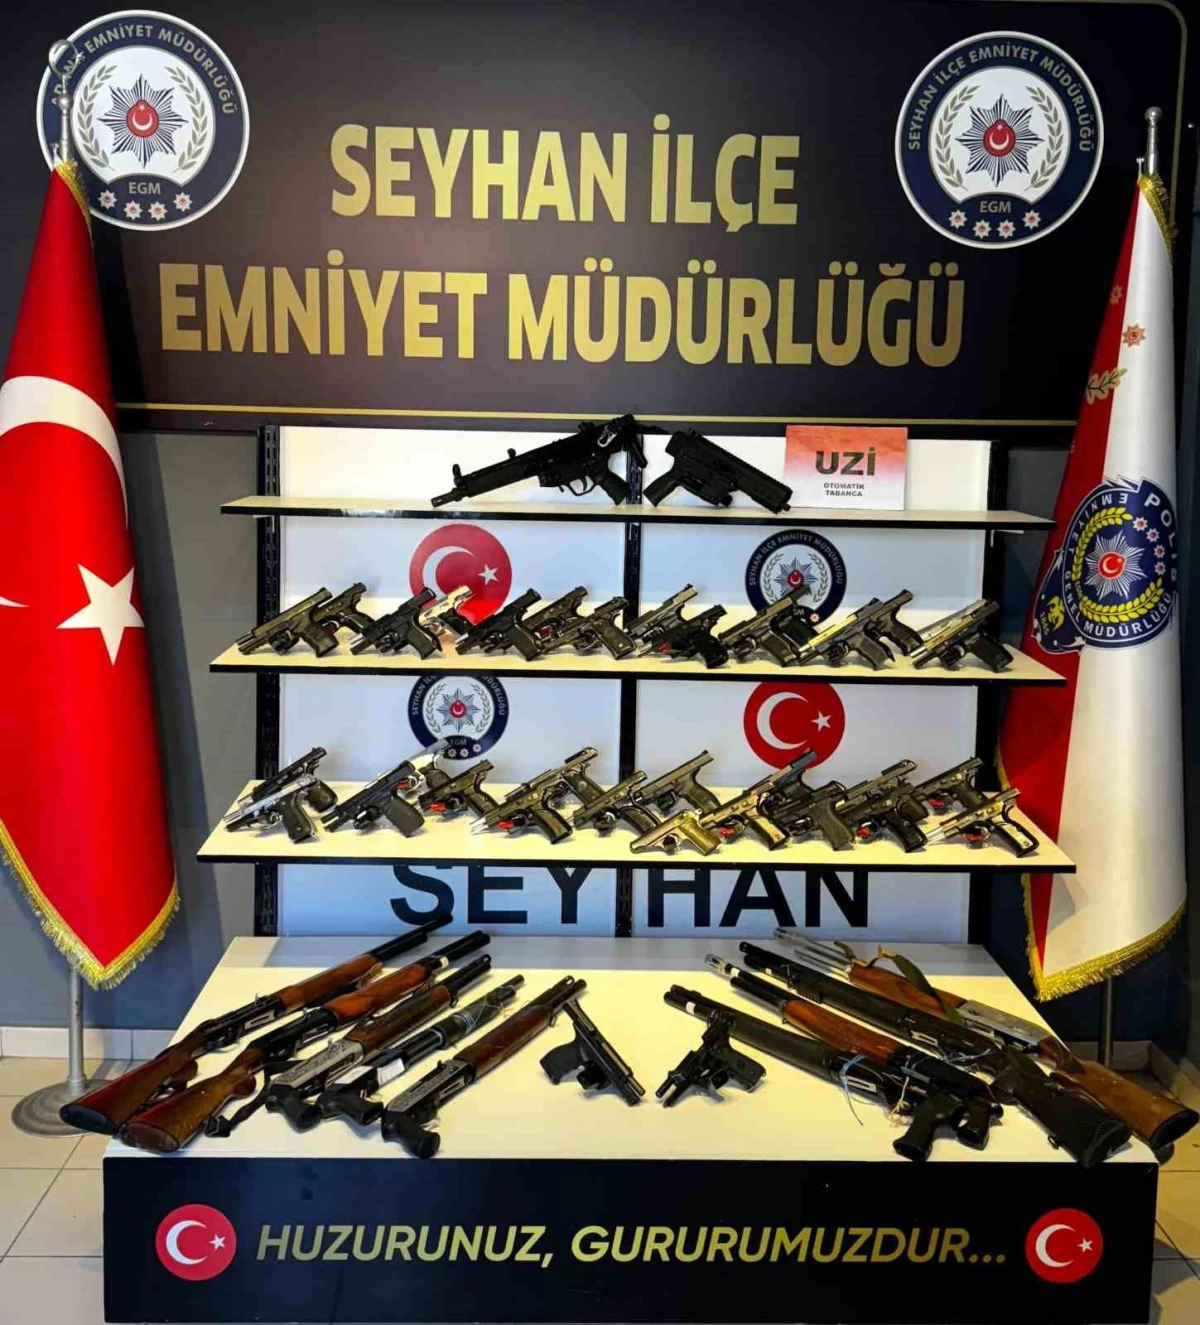 Adana\'da yapılan uygulamalarda çok sayıda ruhsatsız silah ele geçirildi